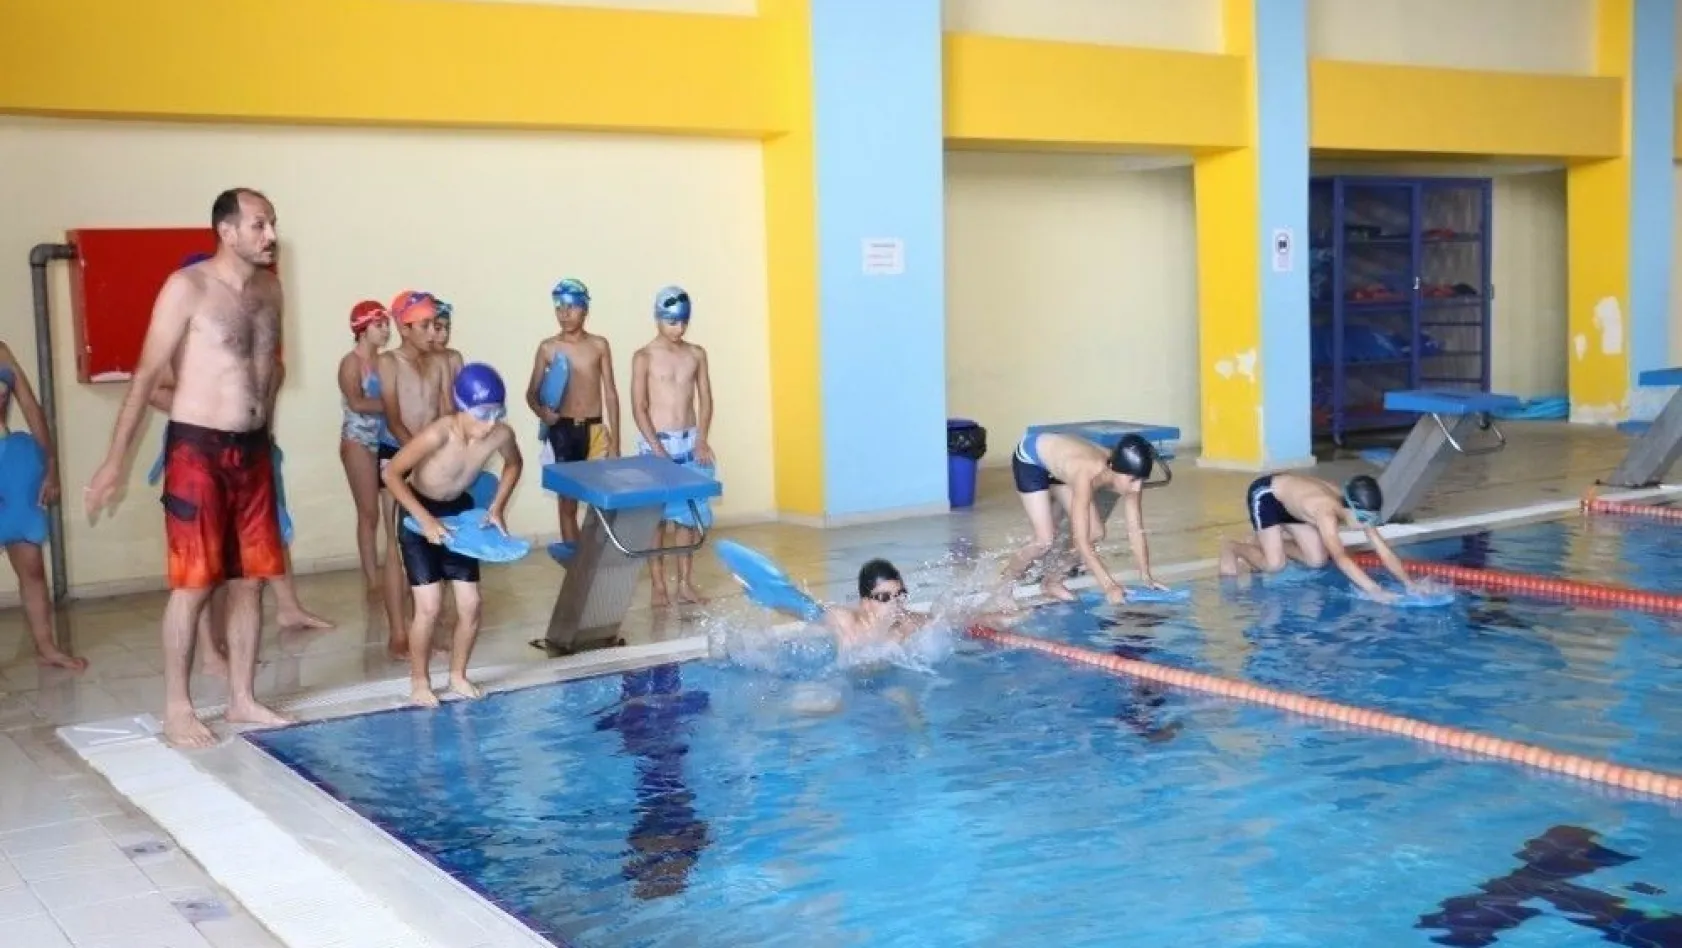 Erzincan'da yüzme kursuna ilgi büyük
